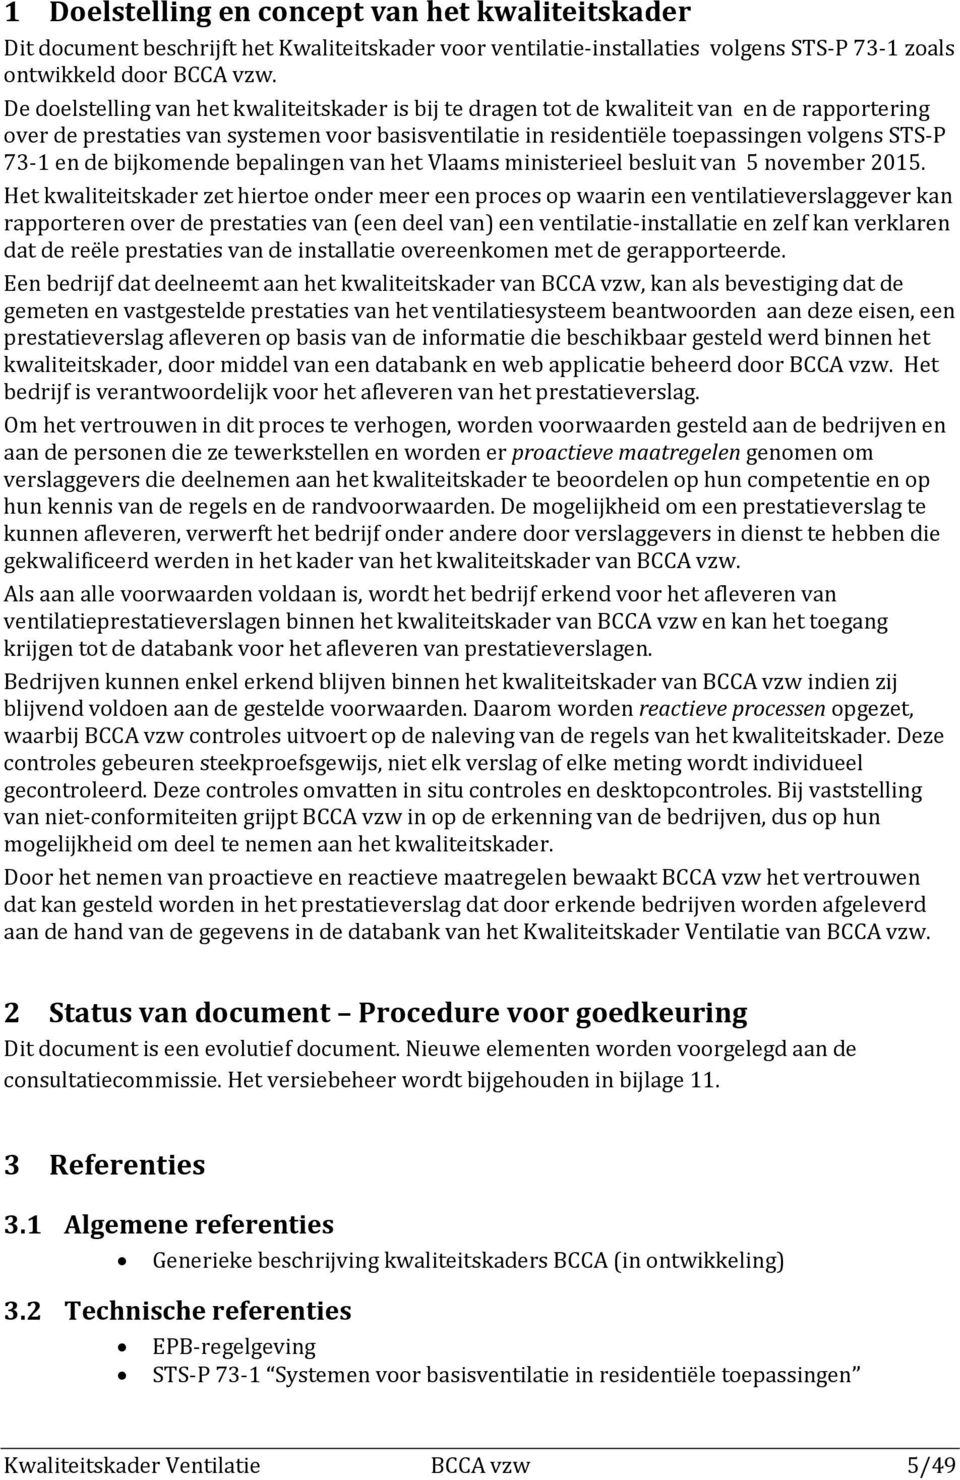 en de bijkomende bepalingen van het Vlaams ministerieel besluit van 5 november 2015.